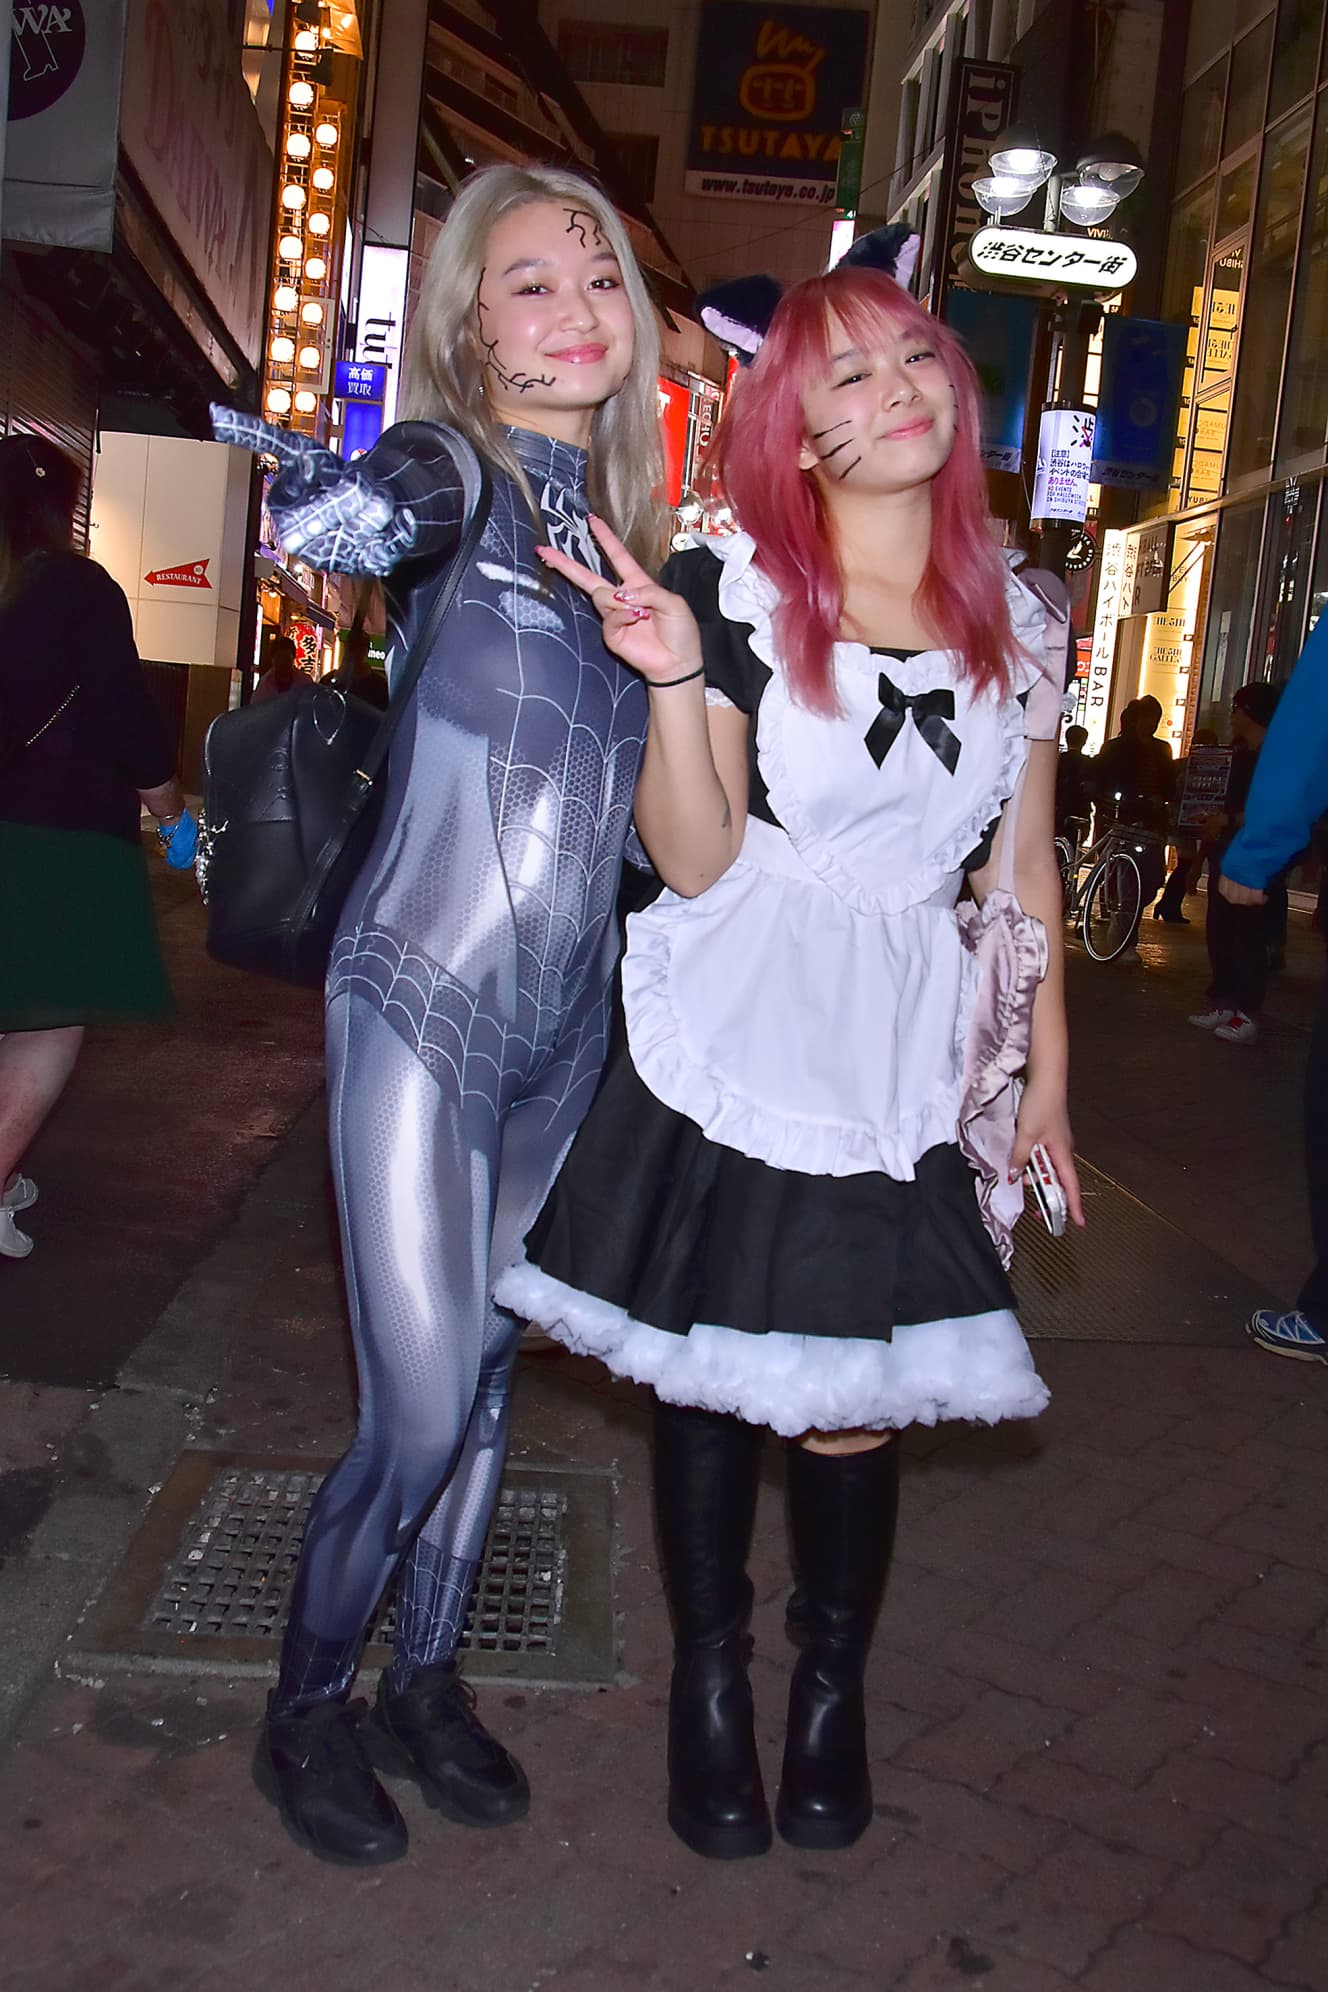 ハロウィン期間に渋谷を訪れた「仮装客」の様子